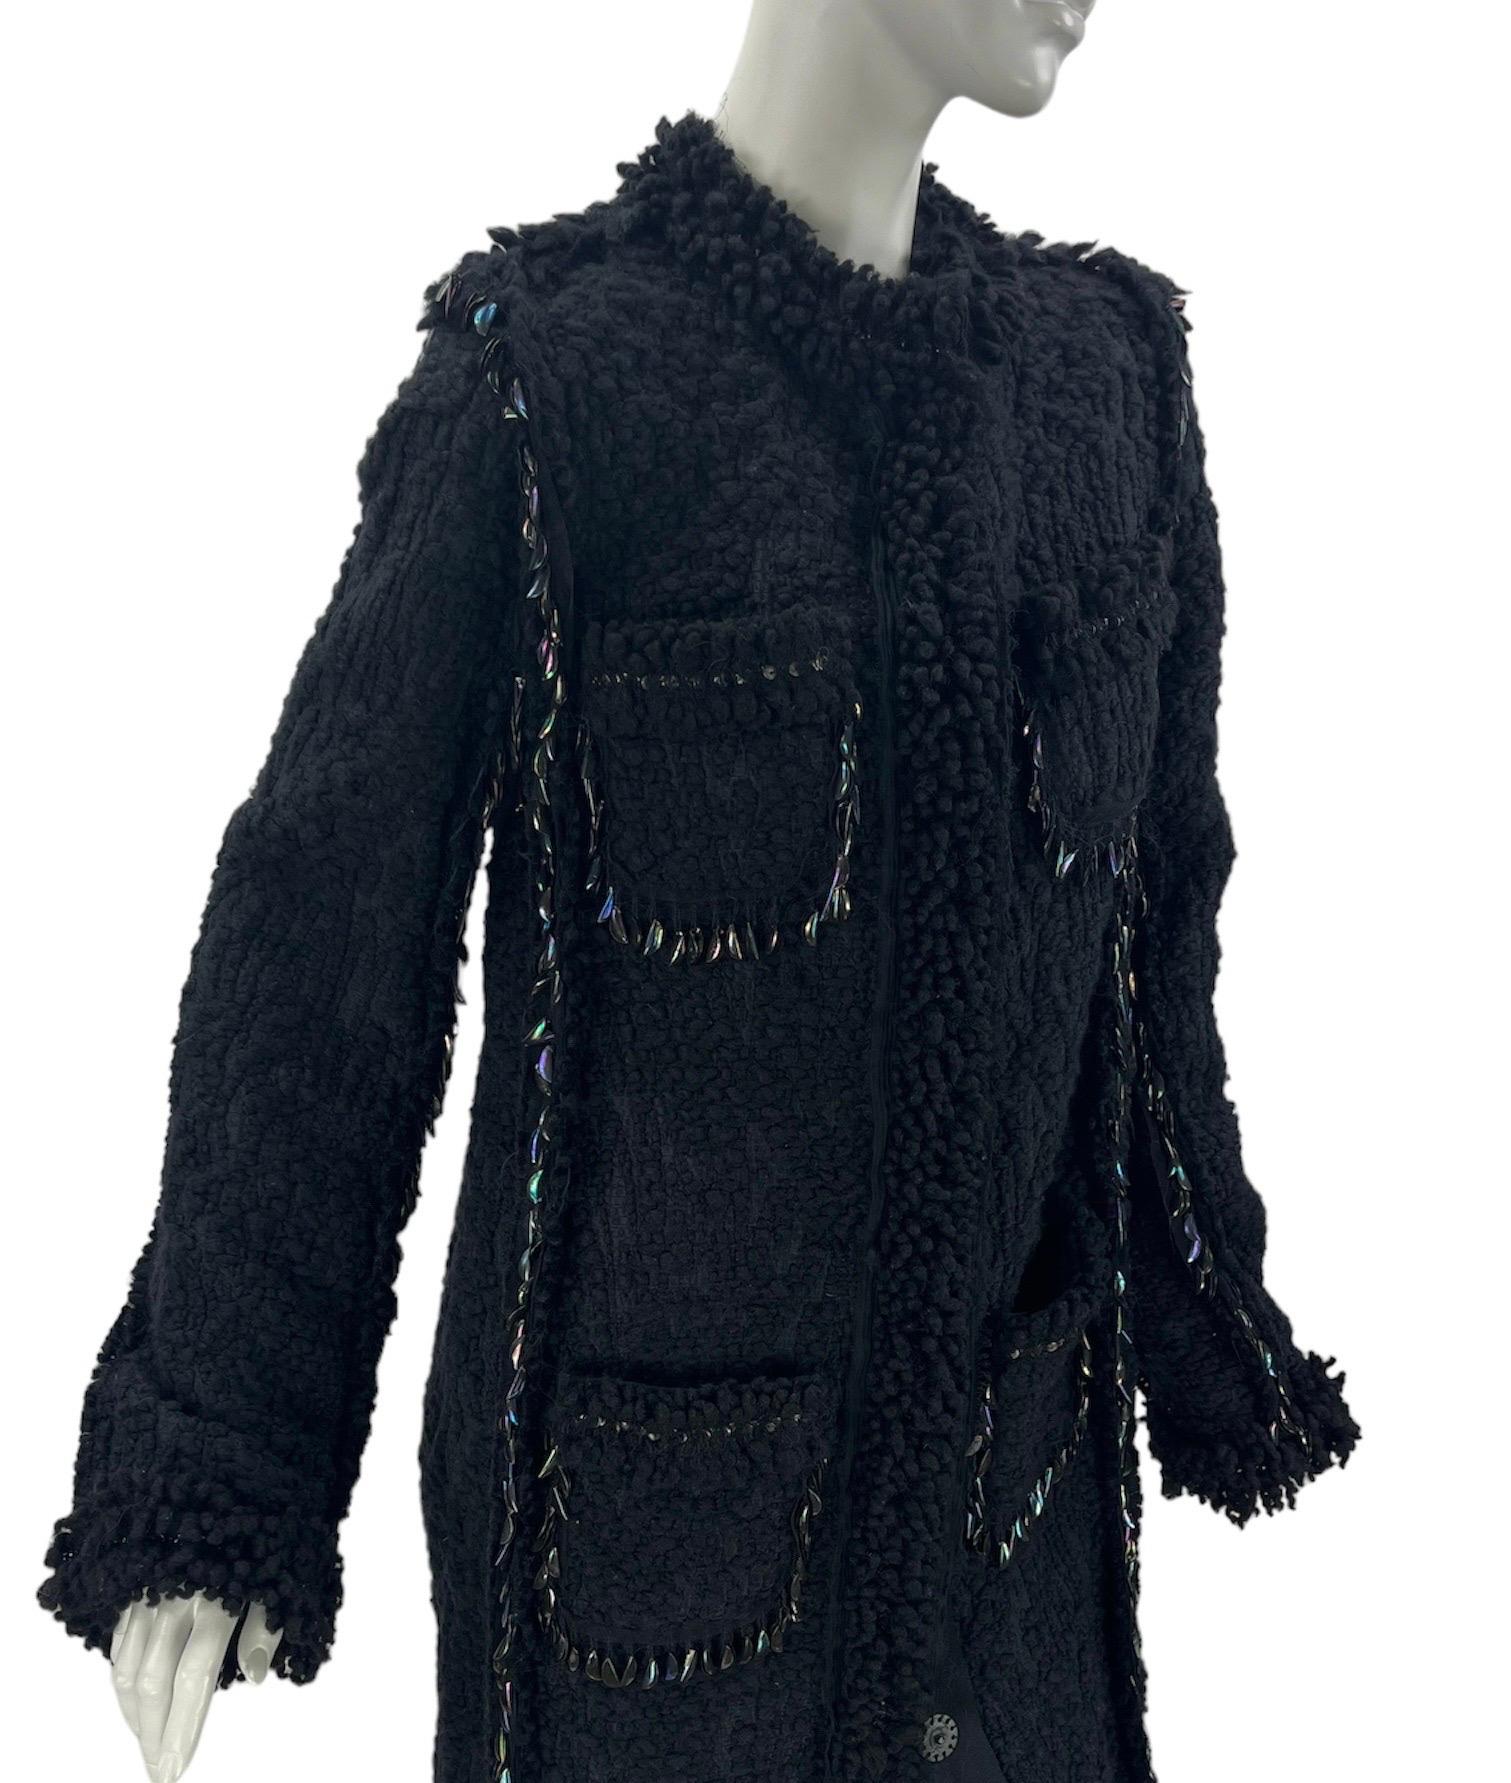 F/W 2010 Vintage Lanvin black embellished boucle tweed coat 40 - 8 NWT For Sale 1